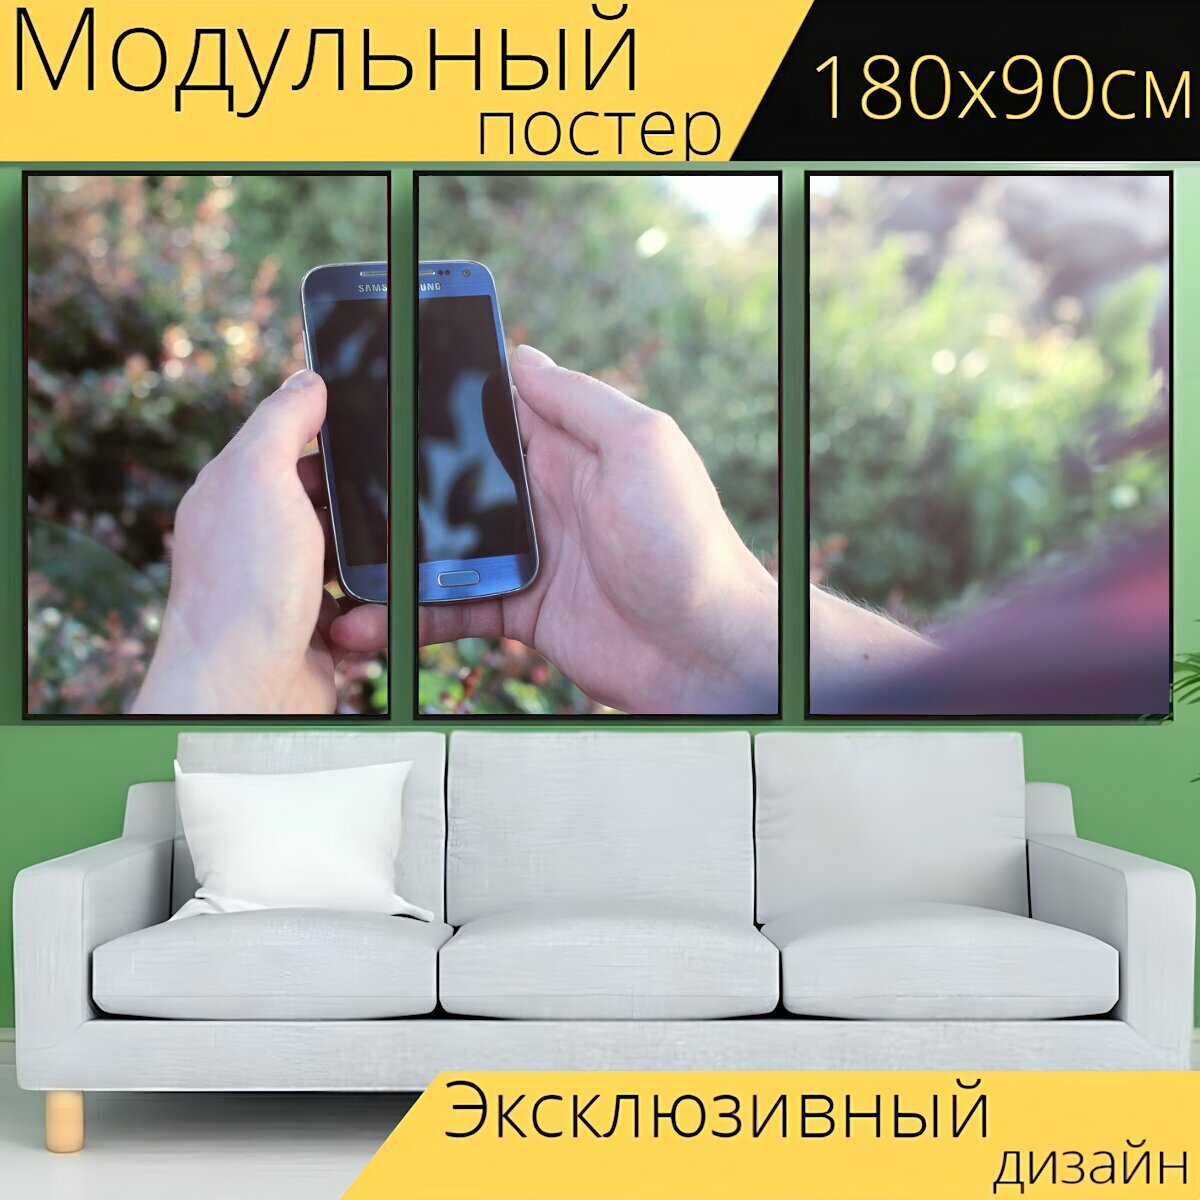 Модульный постер "Андроид, смартфон, мобильный" 180 x 90 см. для интерьера